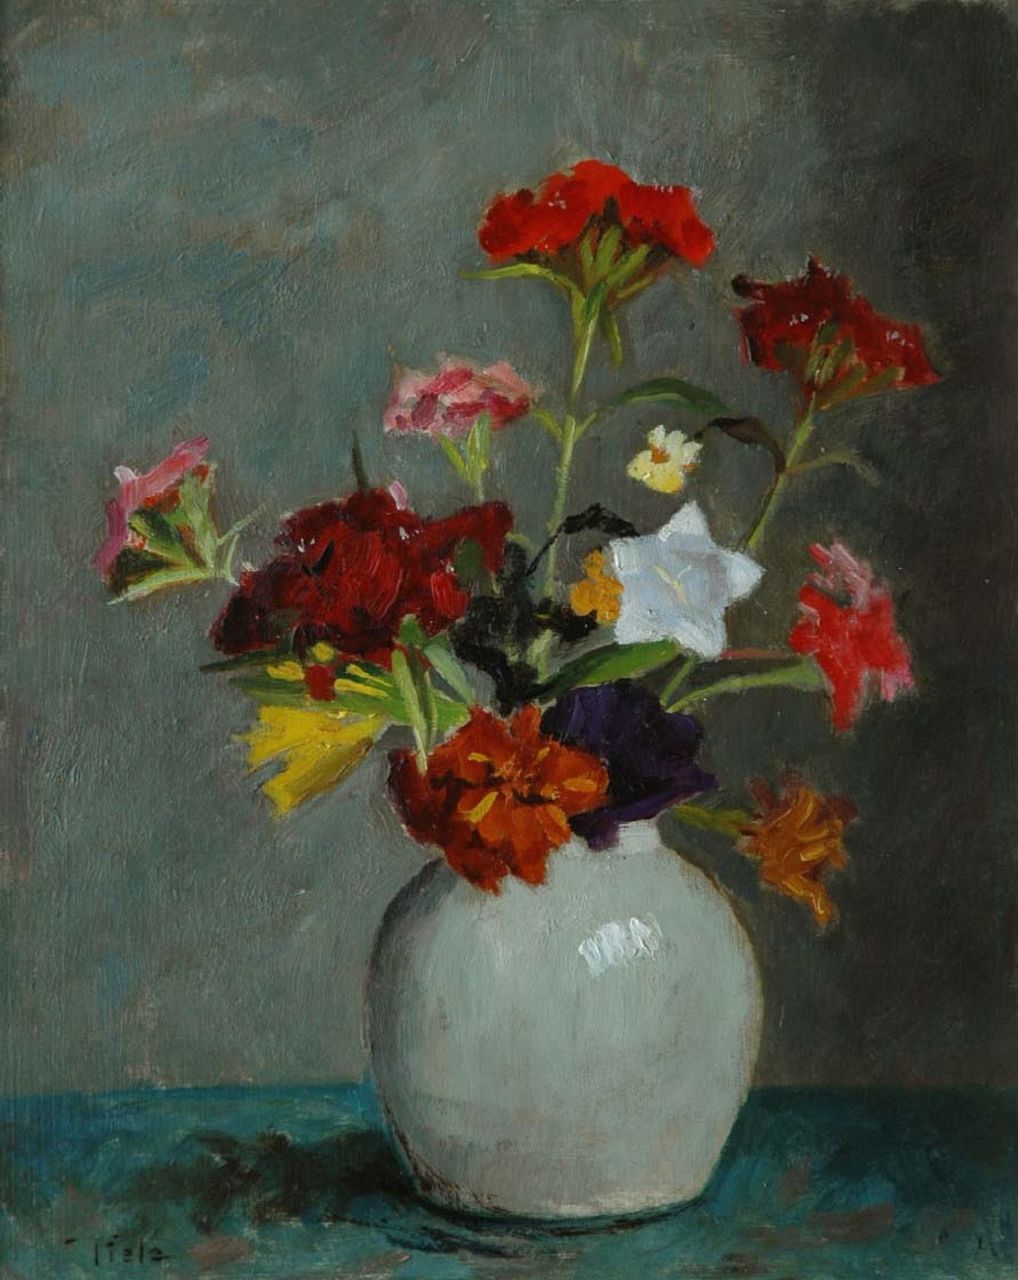 Tiele J.  | 'Jan' Cornelis Tiele, A coulorful bouquet, Öl auf Holzfaser 30,0 x 24,0 cm, signed l.l. und painted between 1945-1955